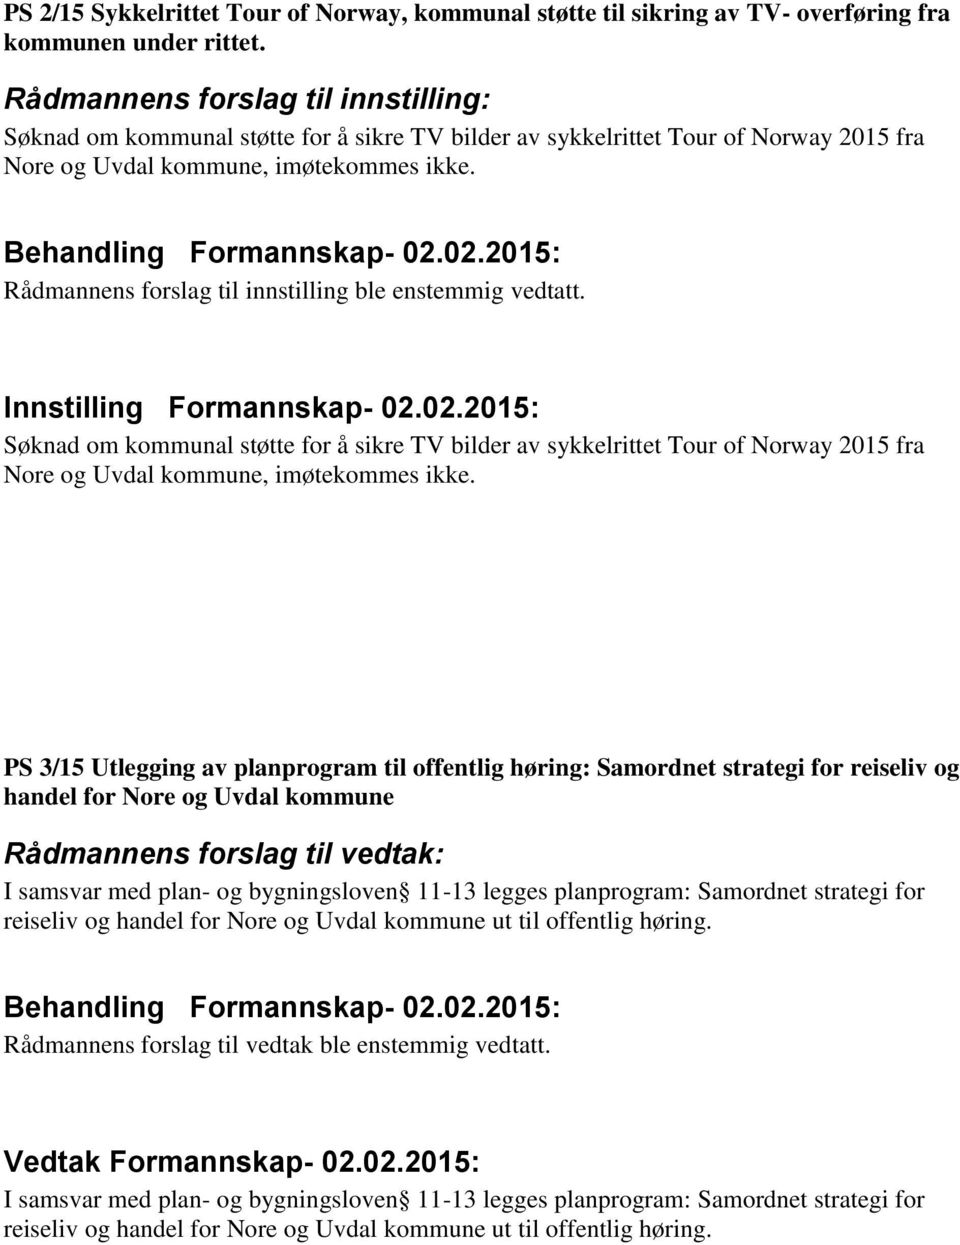 Rådmannens forslag til innstilling ble enstemmig vedtatt. Søknad om kommunal støtte for å sikre TV bilder av sykkelrittet Tour of Norway 2015 fra Nore og Uvdal kommune, imøtekommes ikke.